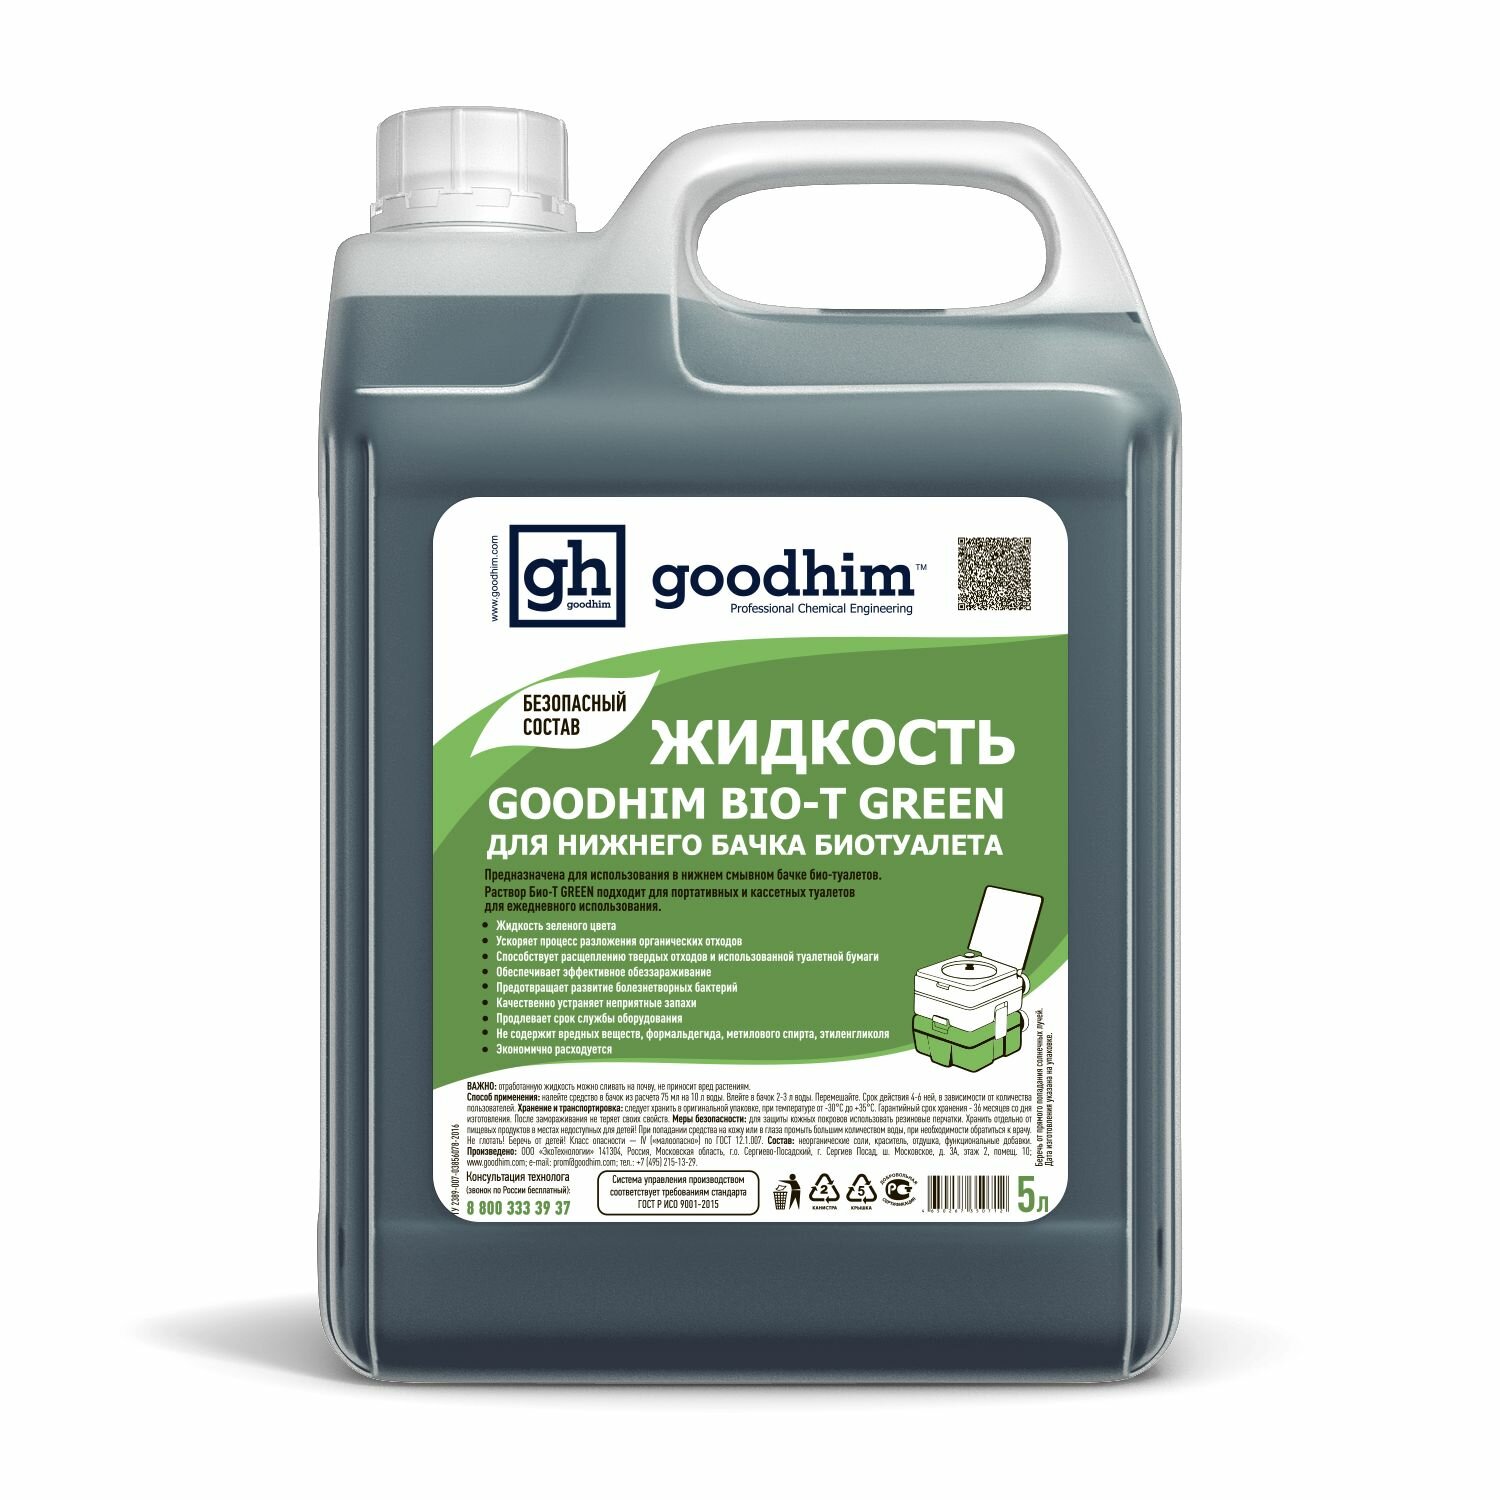 Жидкость для нижнего бачка биотуалета GOODHIM BIO-T GREEN, 5 л 50712